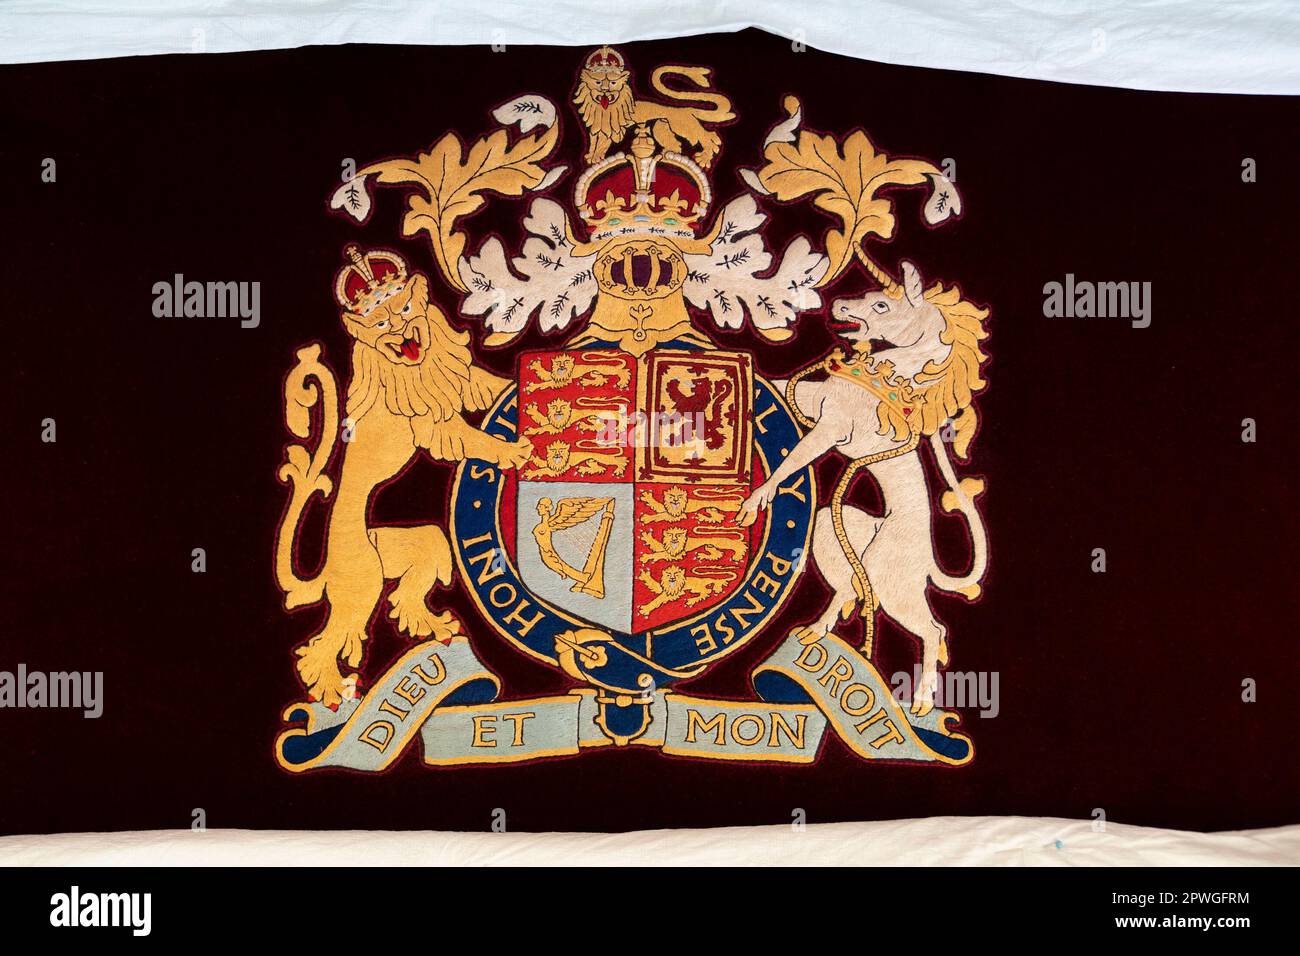 Particolare dello stemma reale su una sedia a trono, dove re Carlo III e la Regina Consort visitarono il Royal College of Needlework all'Hampton Court Palace a East Molesey, Surrey. Data immagine: Martedì 21 marzo 2023. Foto Stock